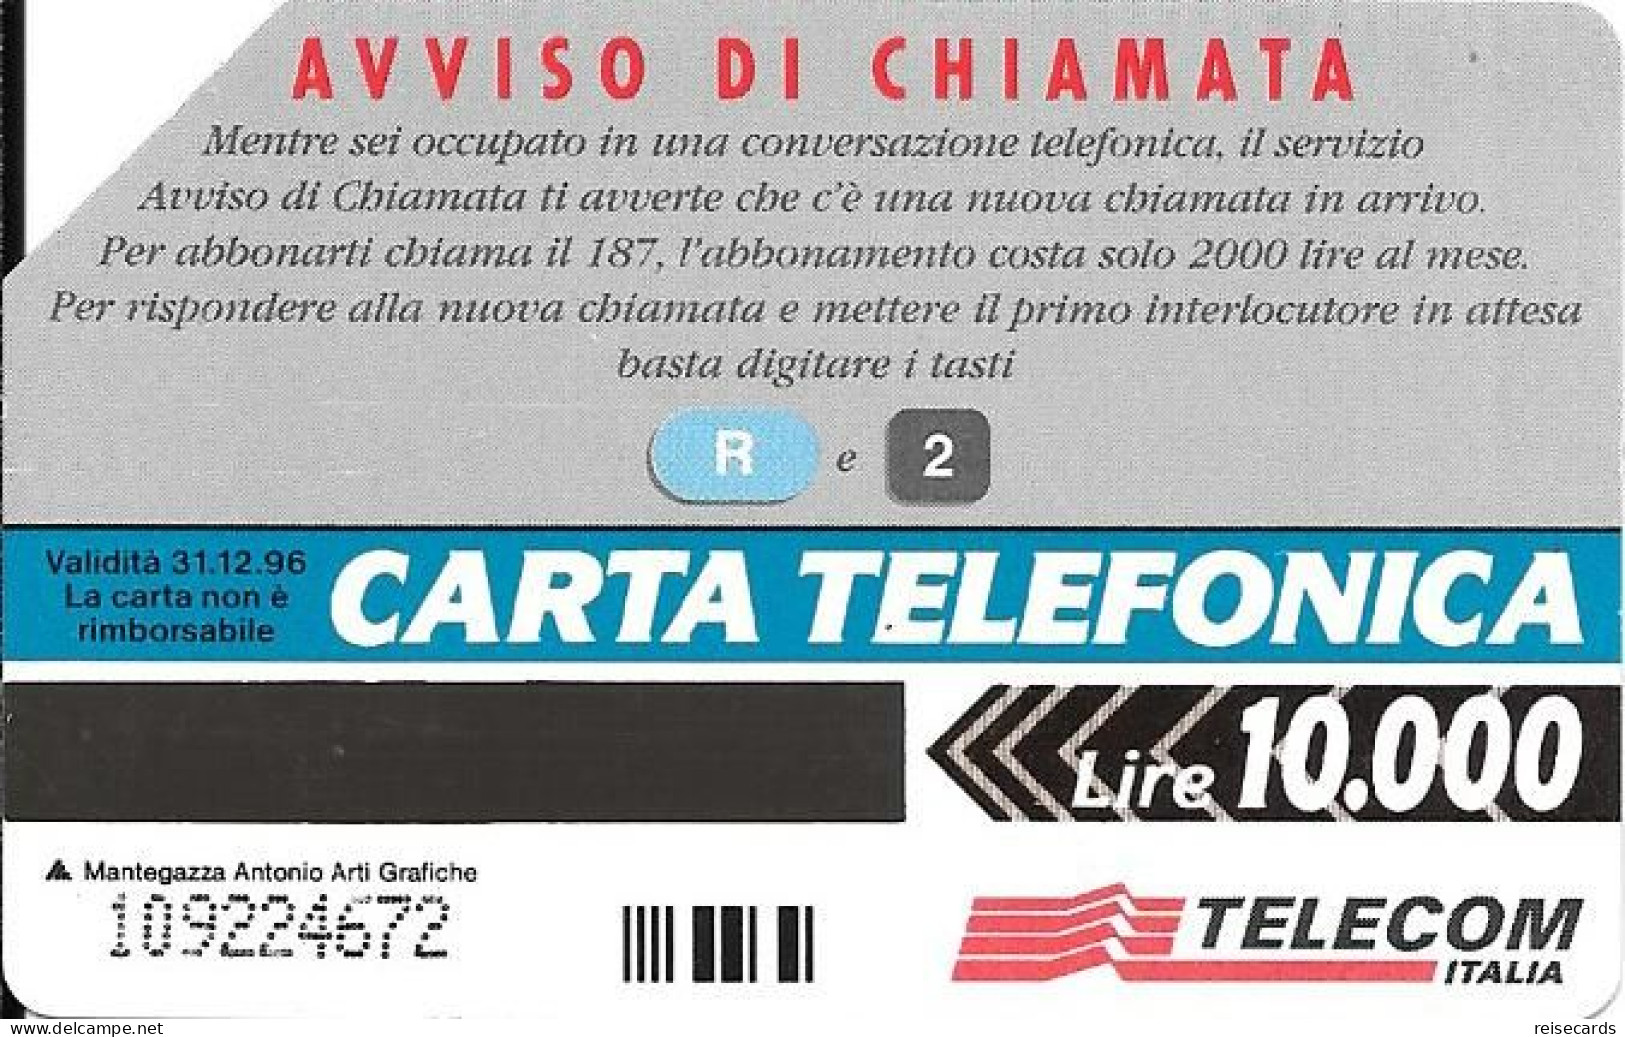 Italy: Telecom Italia - R2 Aviso Di Chiamata - Pubbliche Pubblicitarie